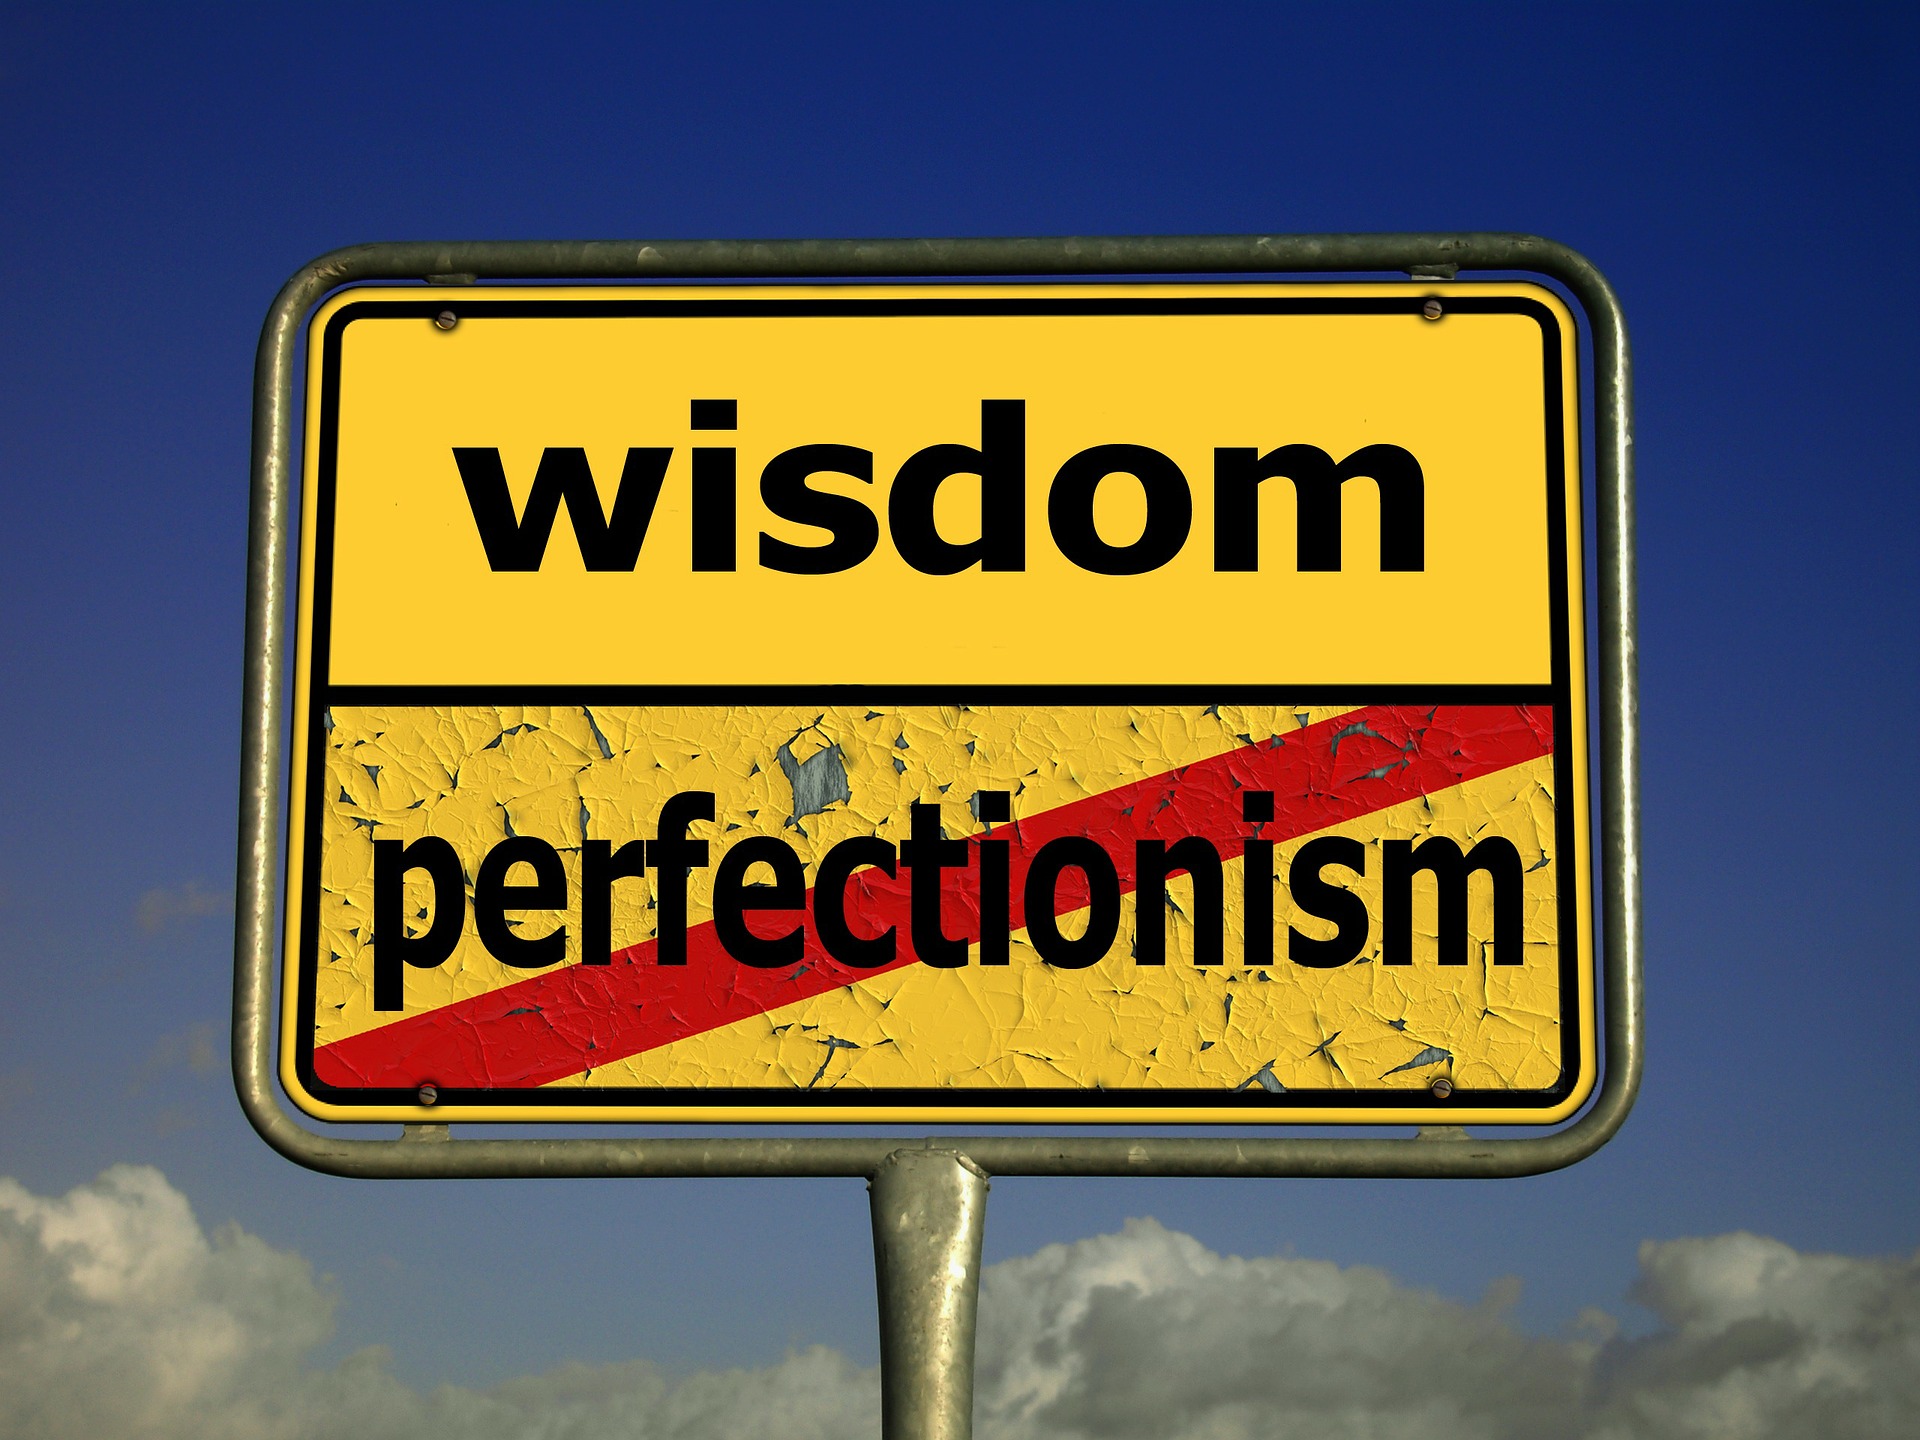 cartello con scritto wisdom e perfectionism